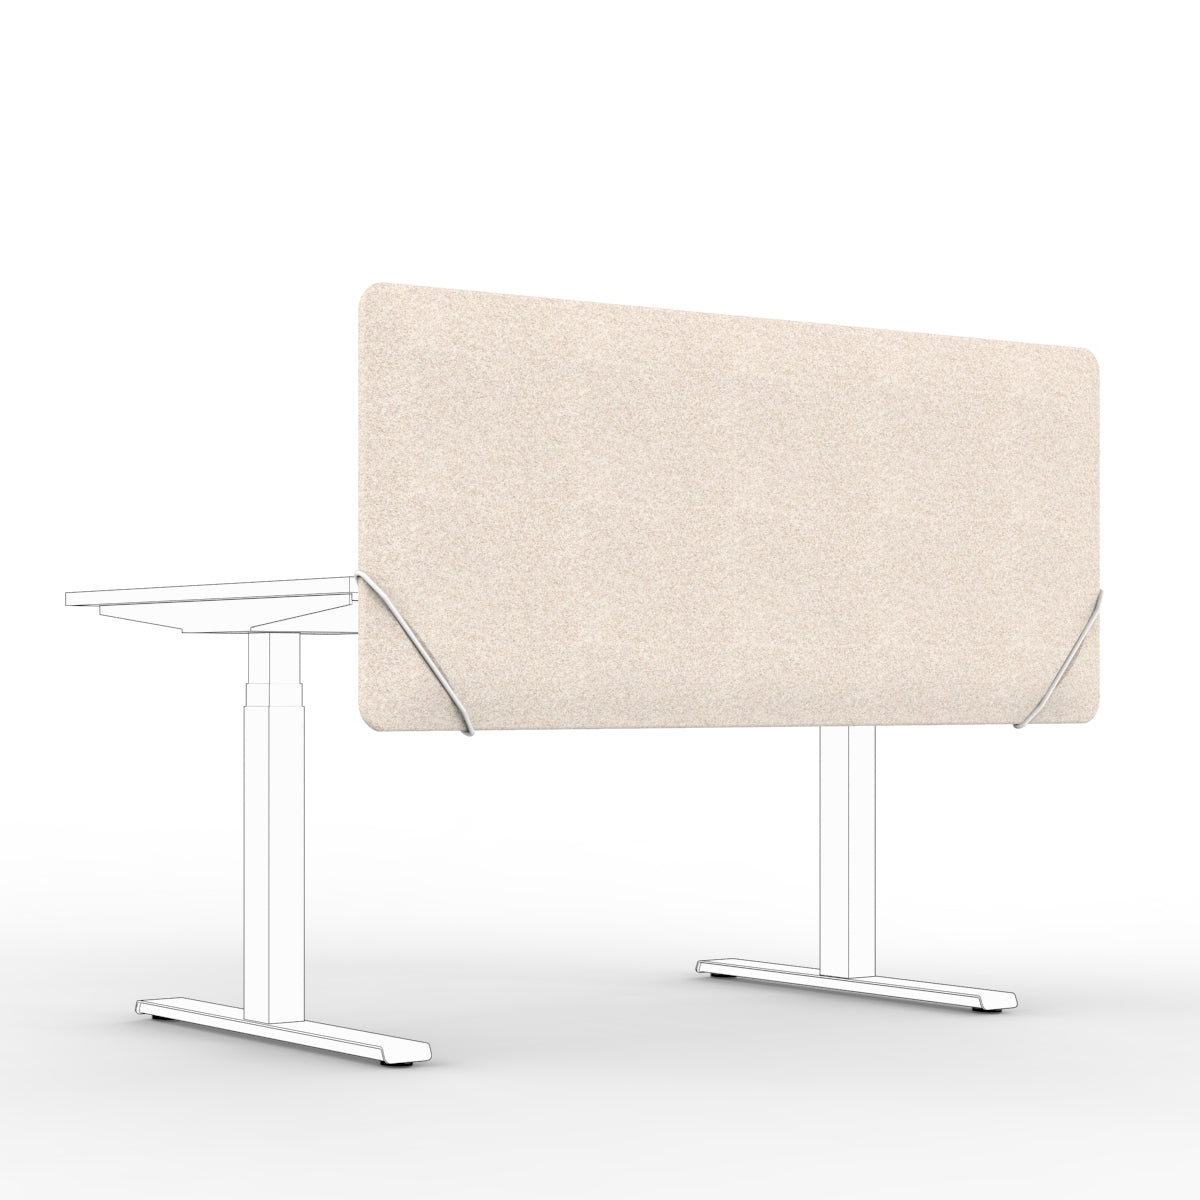 Sound absorbing table divider in natural beige with white slide on table mounts. Bordskjerm for skrivebord. Avskjerming og lyddemping på kontor